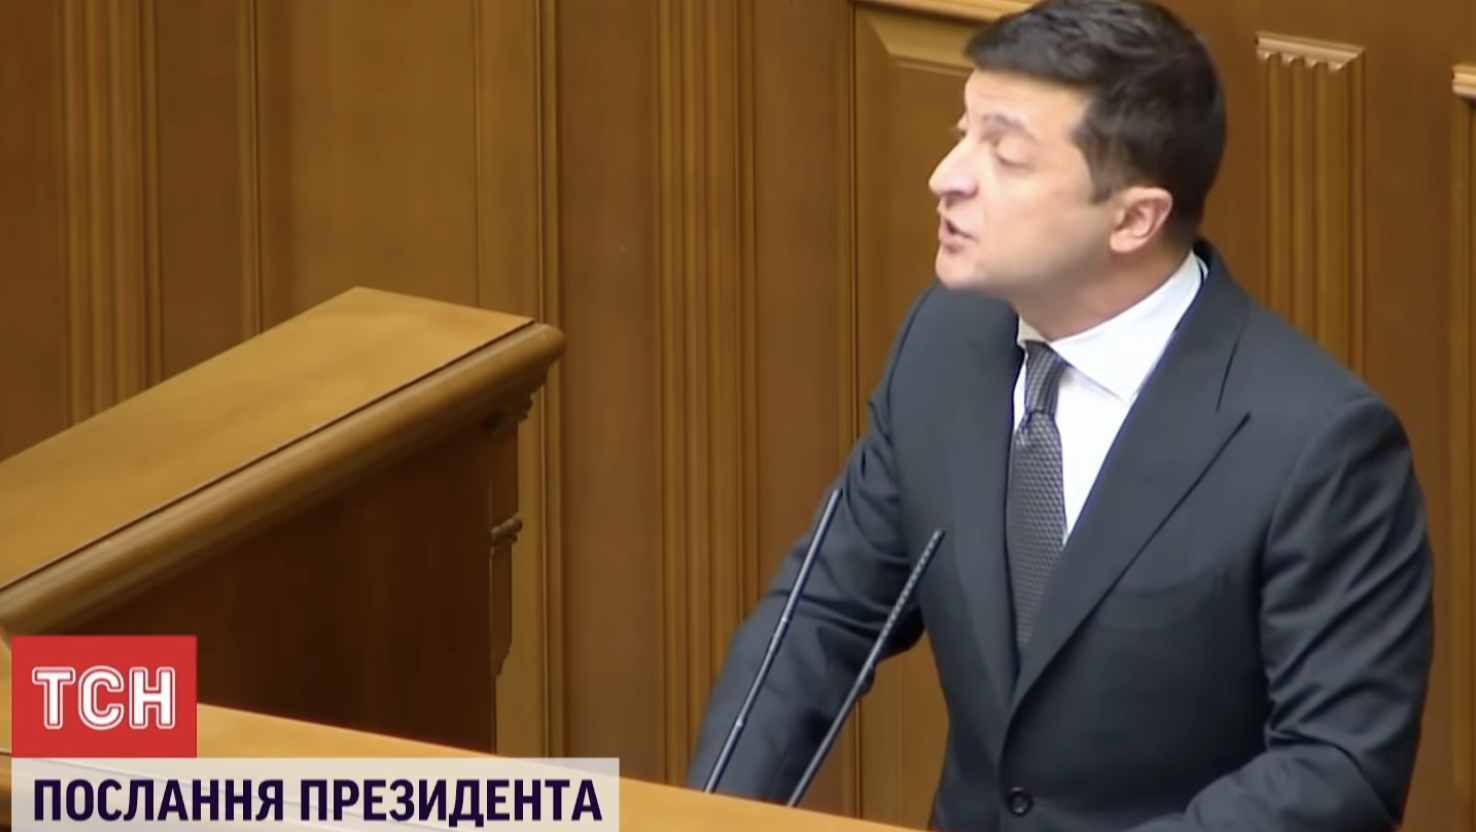 3еленський: якщо ви забули то я вам нагадаю що вони натворили.. ні Тимошенко, ні Гройсман ні Яценюк більше не повернуться до влади, як би цього самі не хотіли